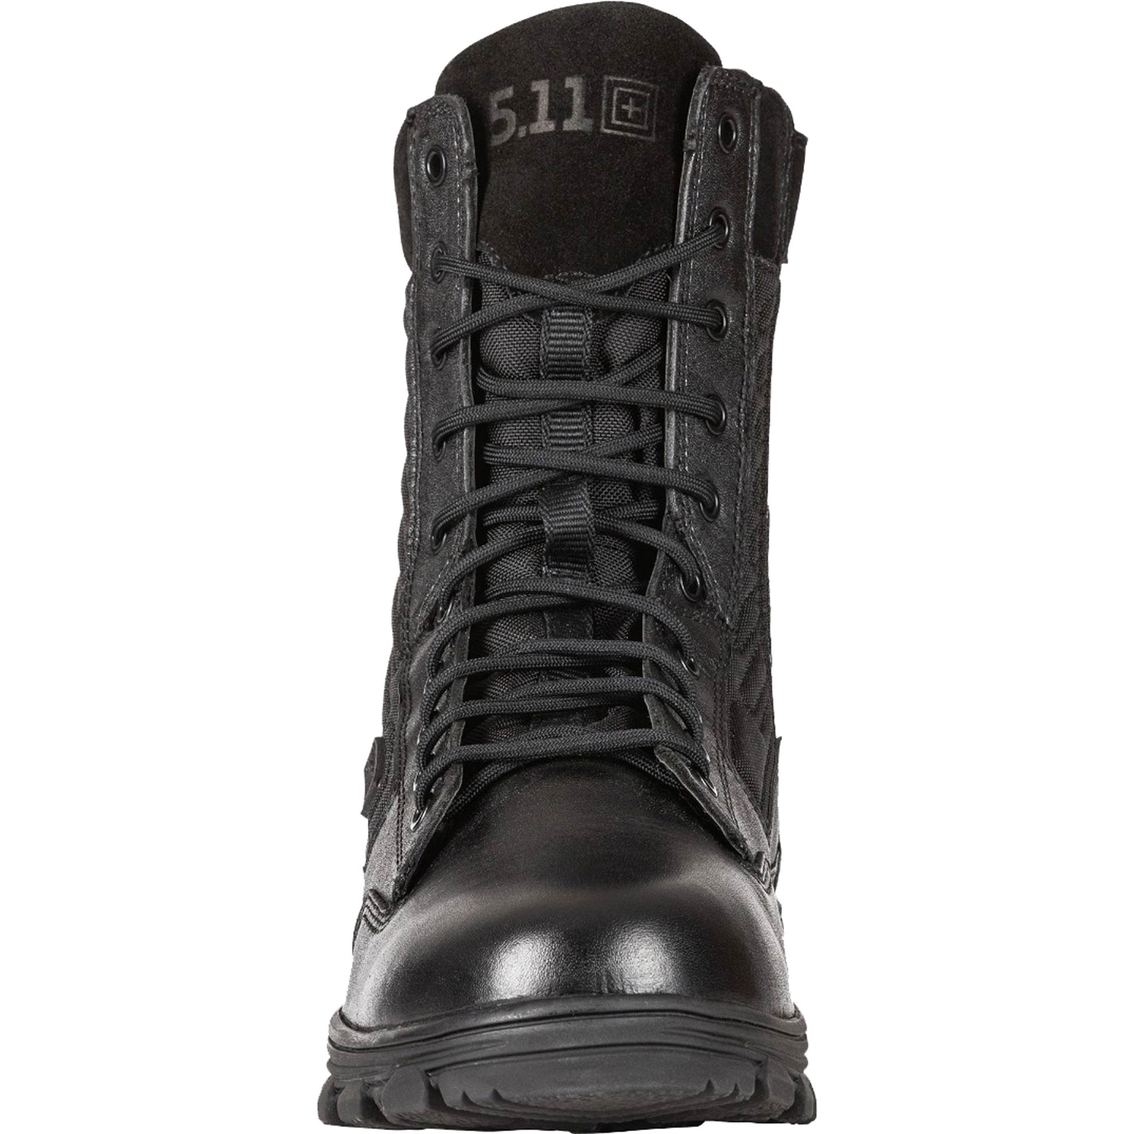 5.11 Men's Evo 2.0 Black 8 in. Boots - Image 3 of 7